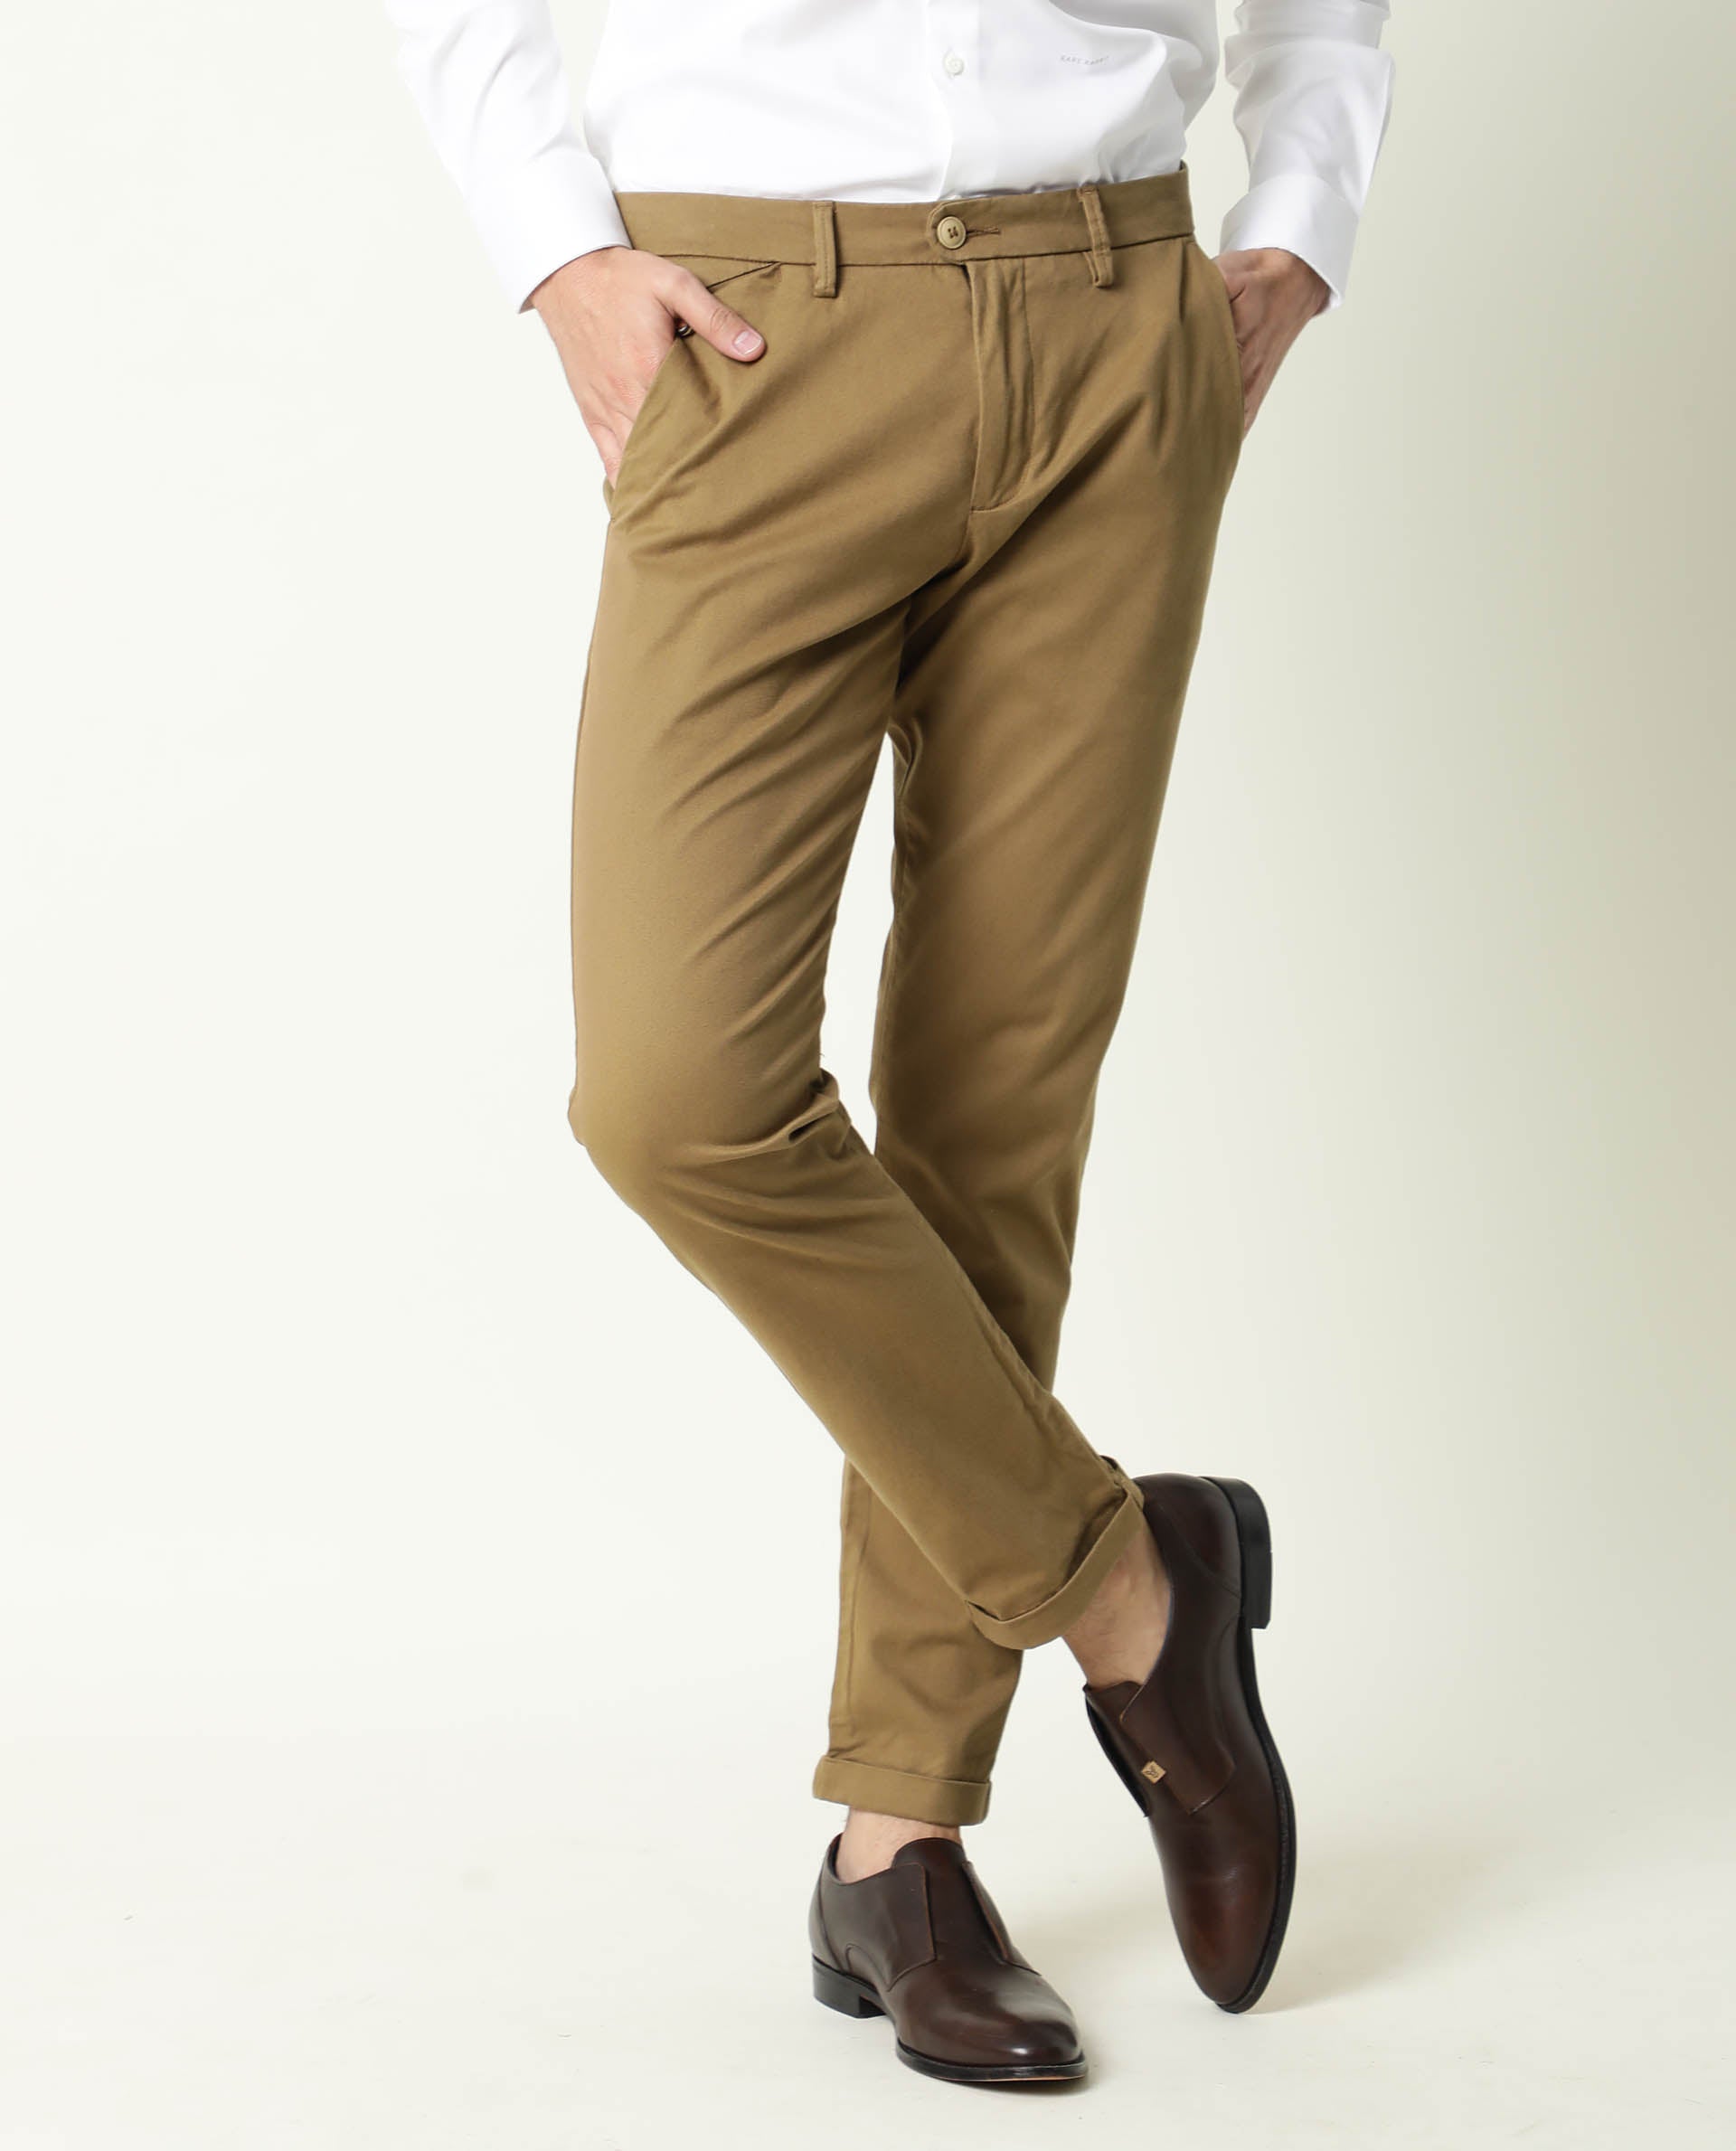 Buy Highlander Olive Green Slim Fit Solid Regular Trousers for Men Online  at Rs569  Ketch